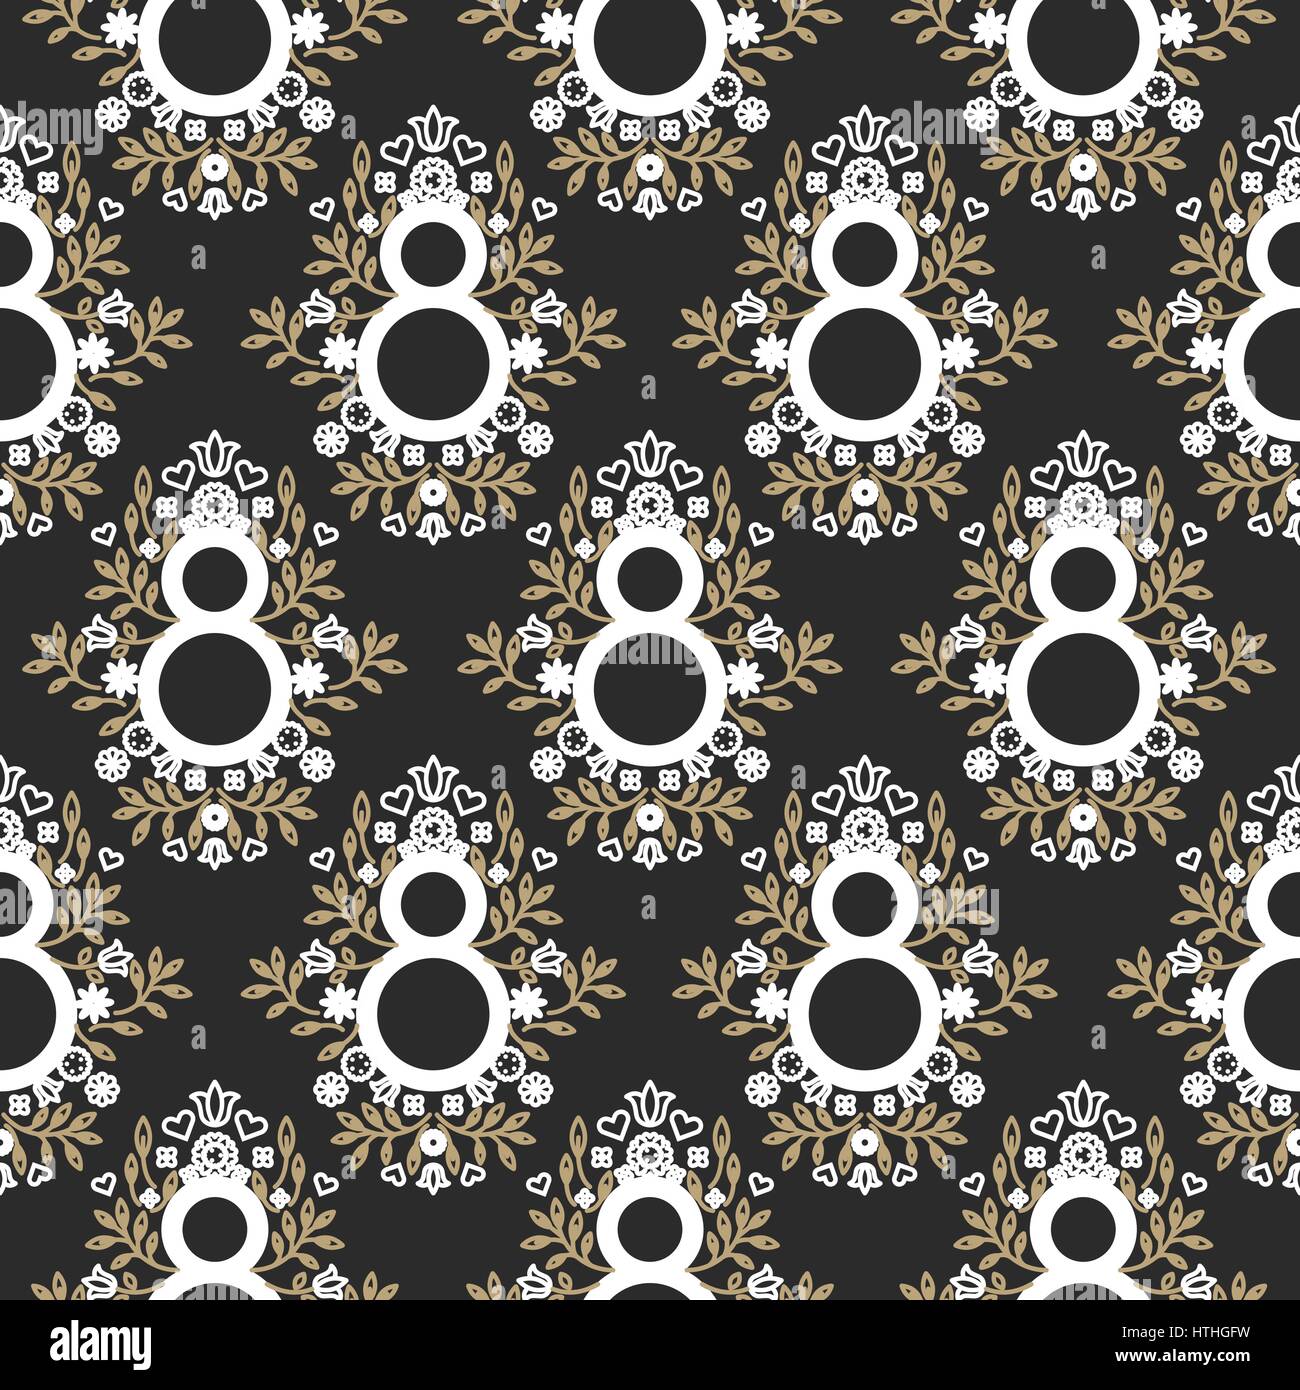 8 mars noir et or floral seamless vector pattern. Illustration de Vecteur